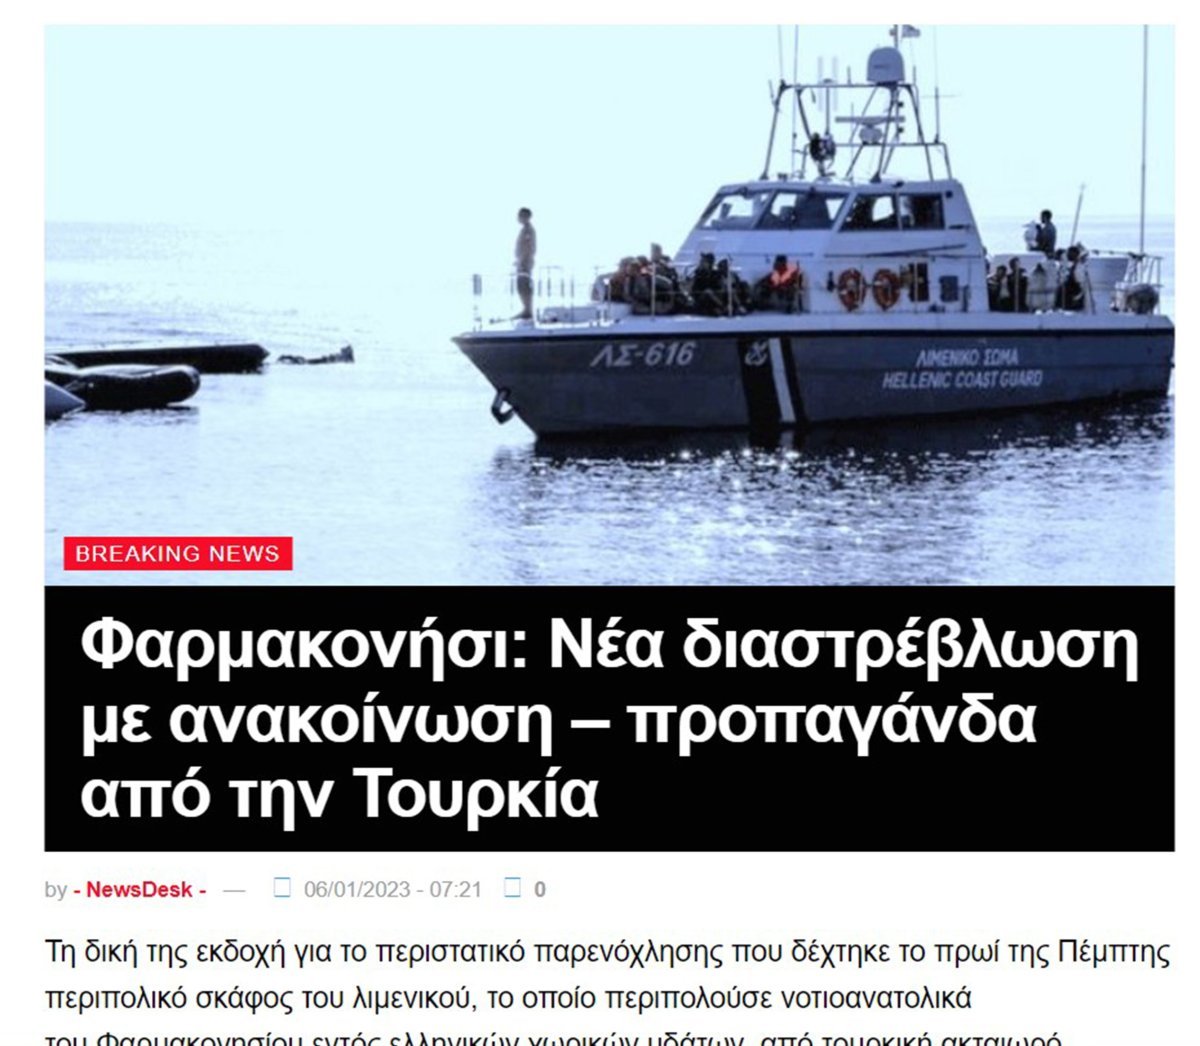 Yunan medyası, Ege’deki tacizi yine çarpıttı